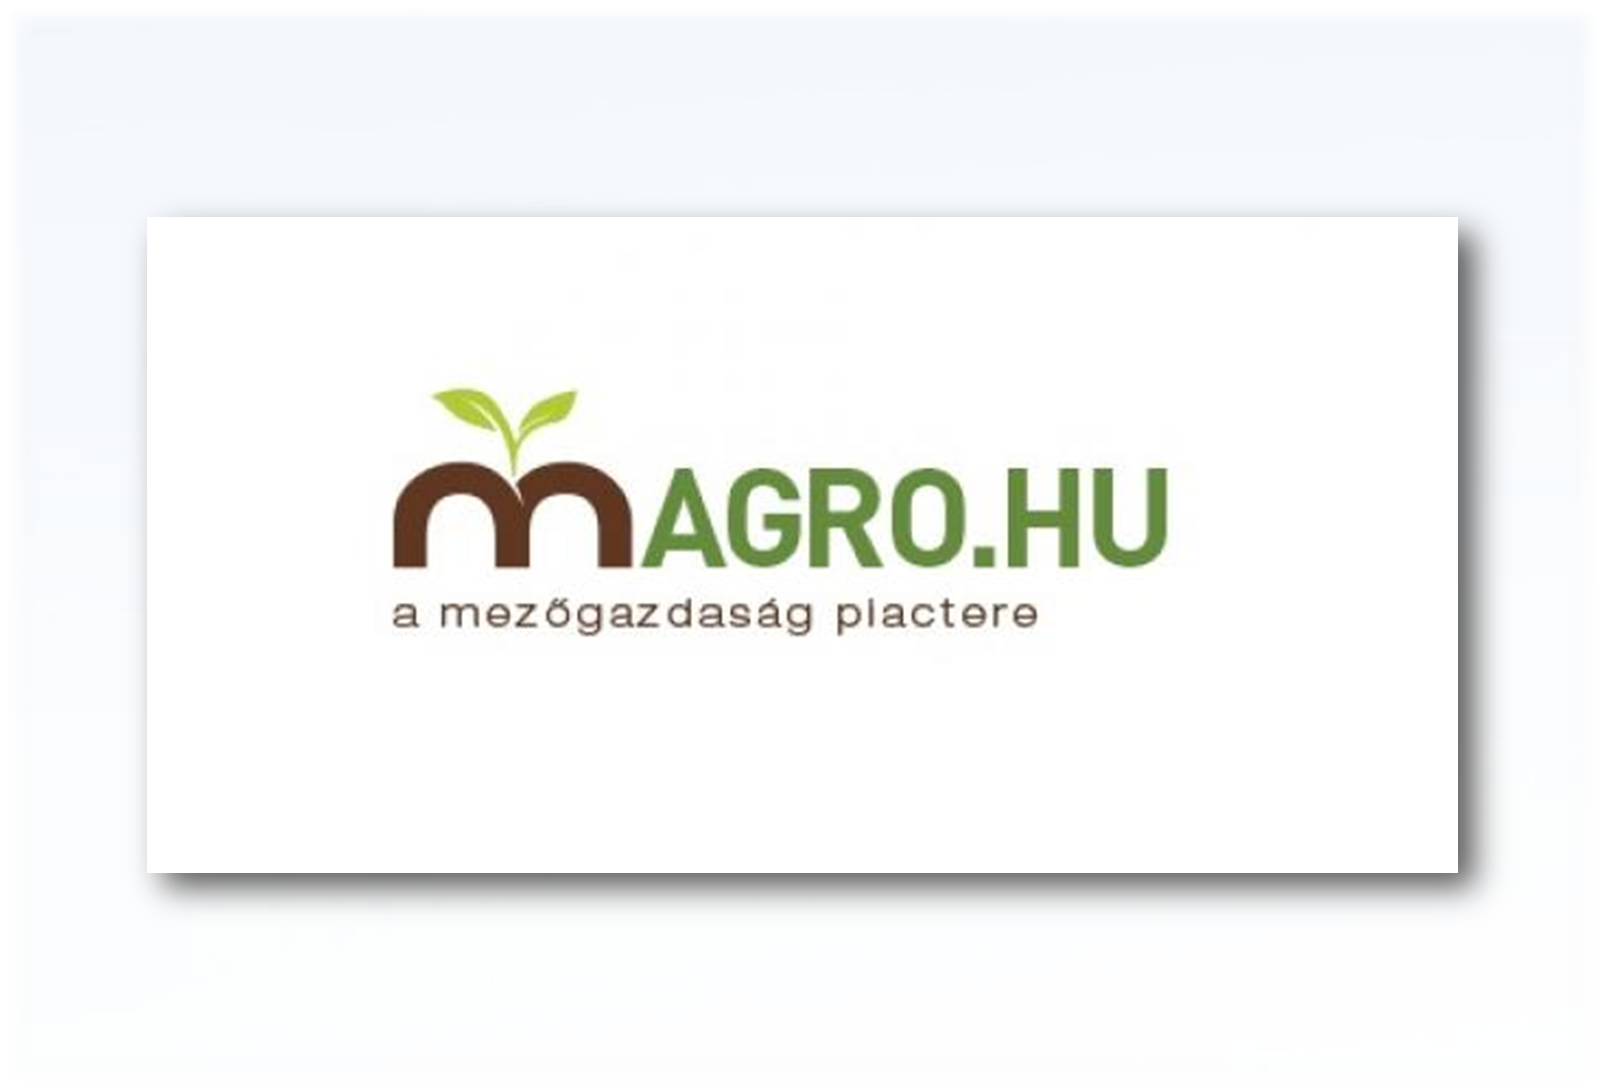 Magro.hu mezőgazdasági piactér